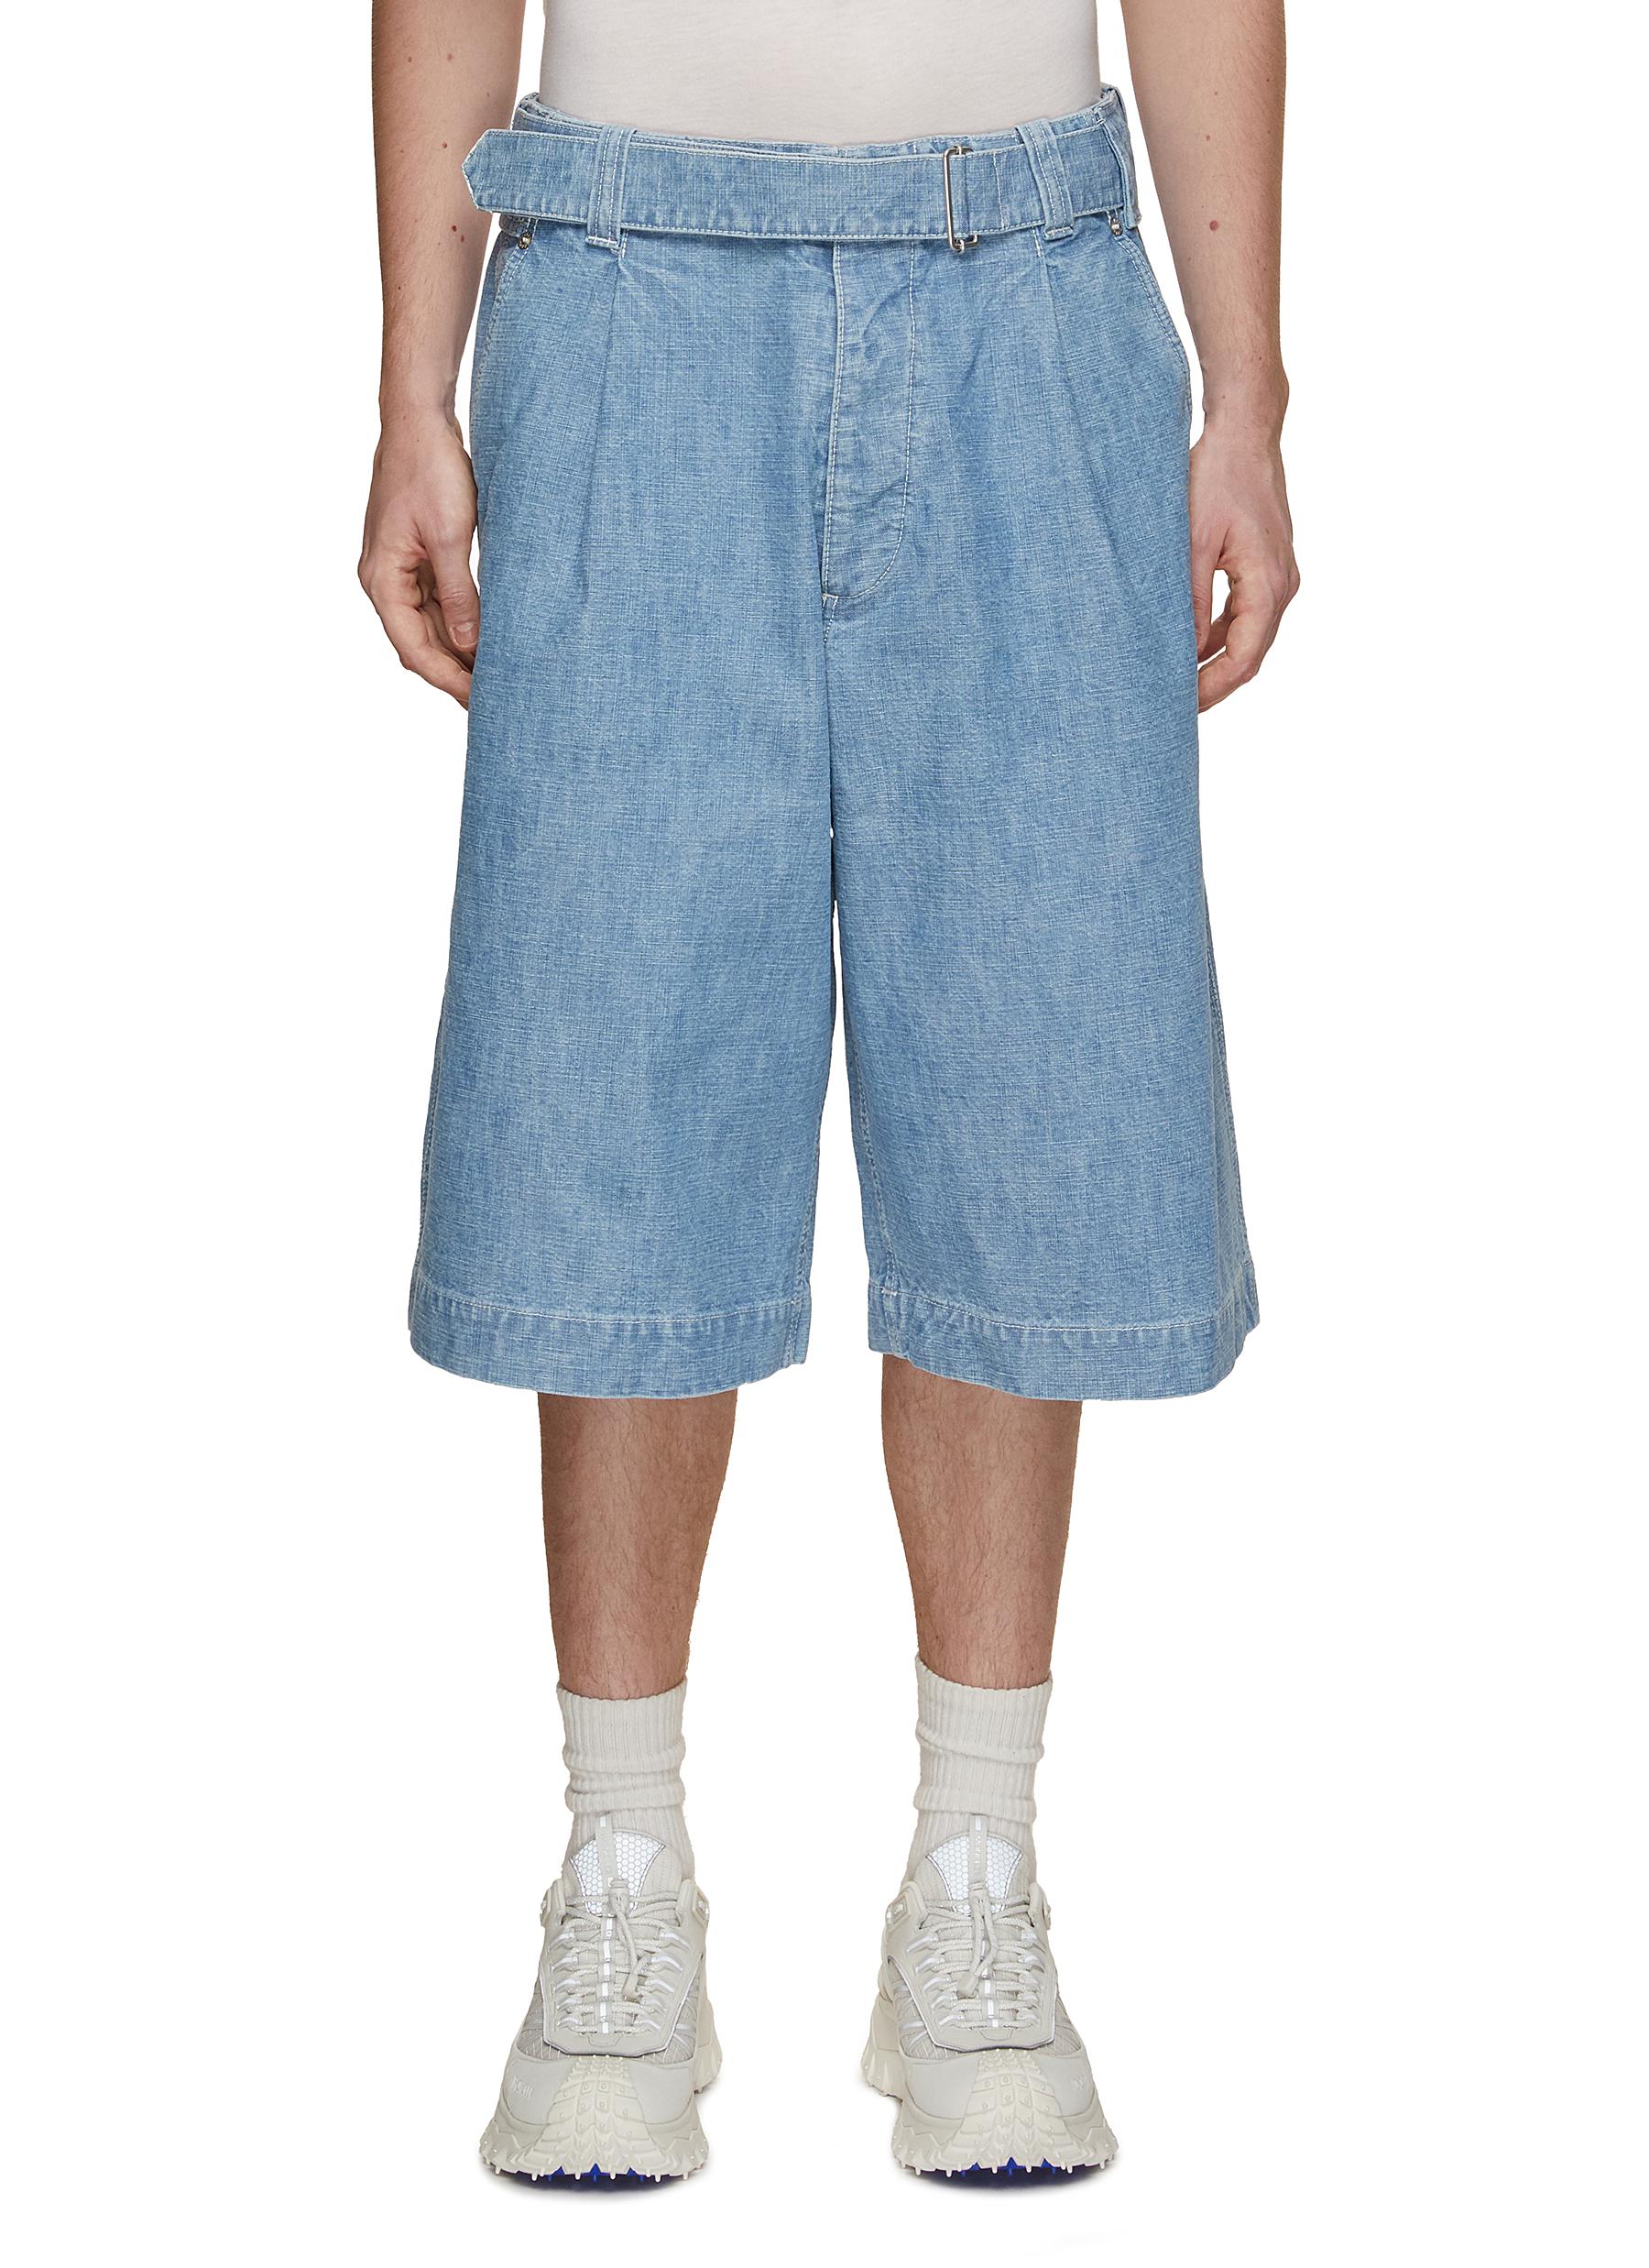 Tommy Jeans Mens Scanton Slim Denim Shorts with Stretch Men New | eBay